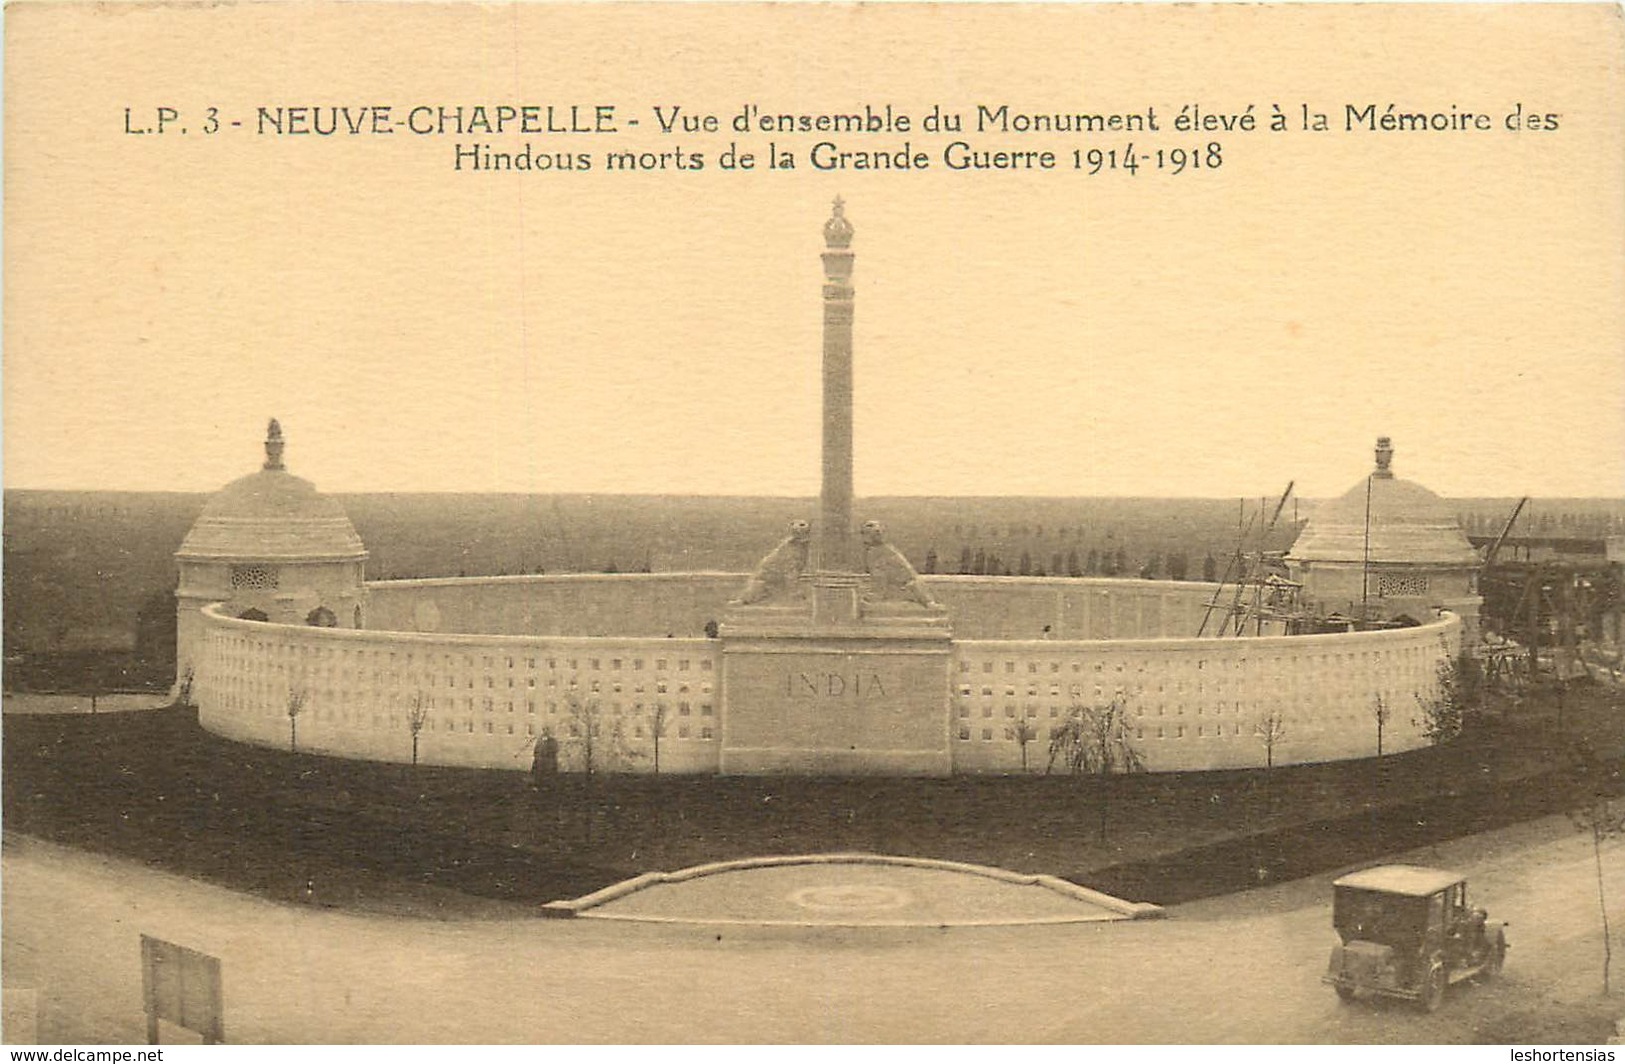 NEUVE CHAPELLE VUE D'ENSEMBLE DU MONUMENT ELEVE A LA MEMOIRE DES HINDOUS - War Memorials